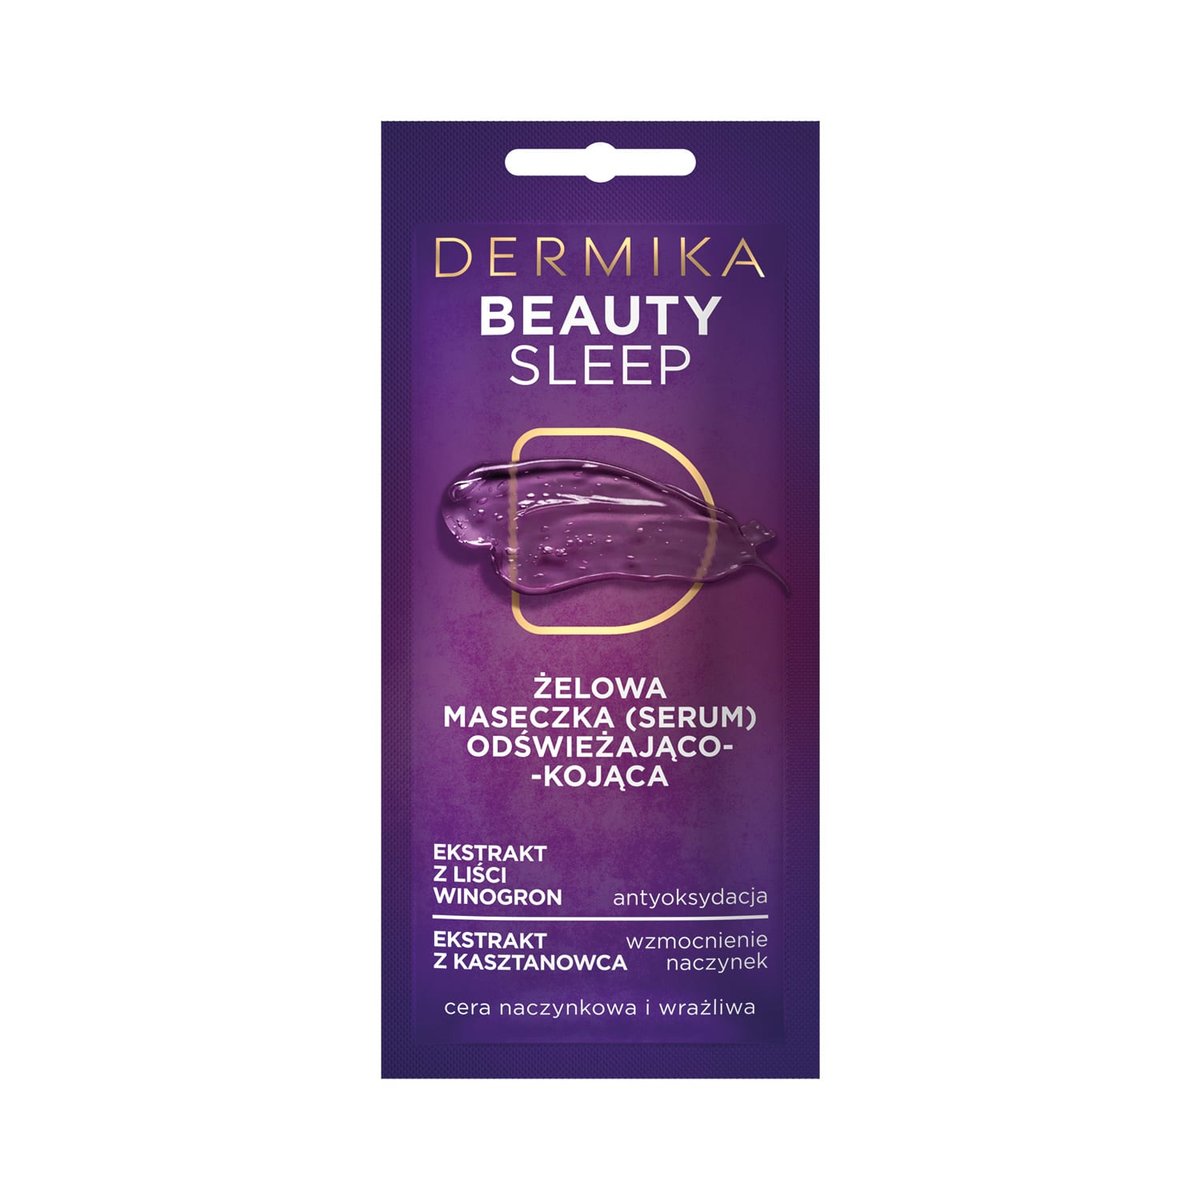 Dermika Beauty Sleep odświeżająco-kojąca żelowa maseczka piękności 10ml